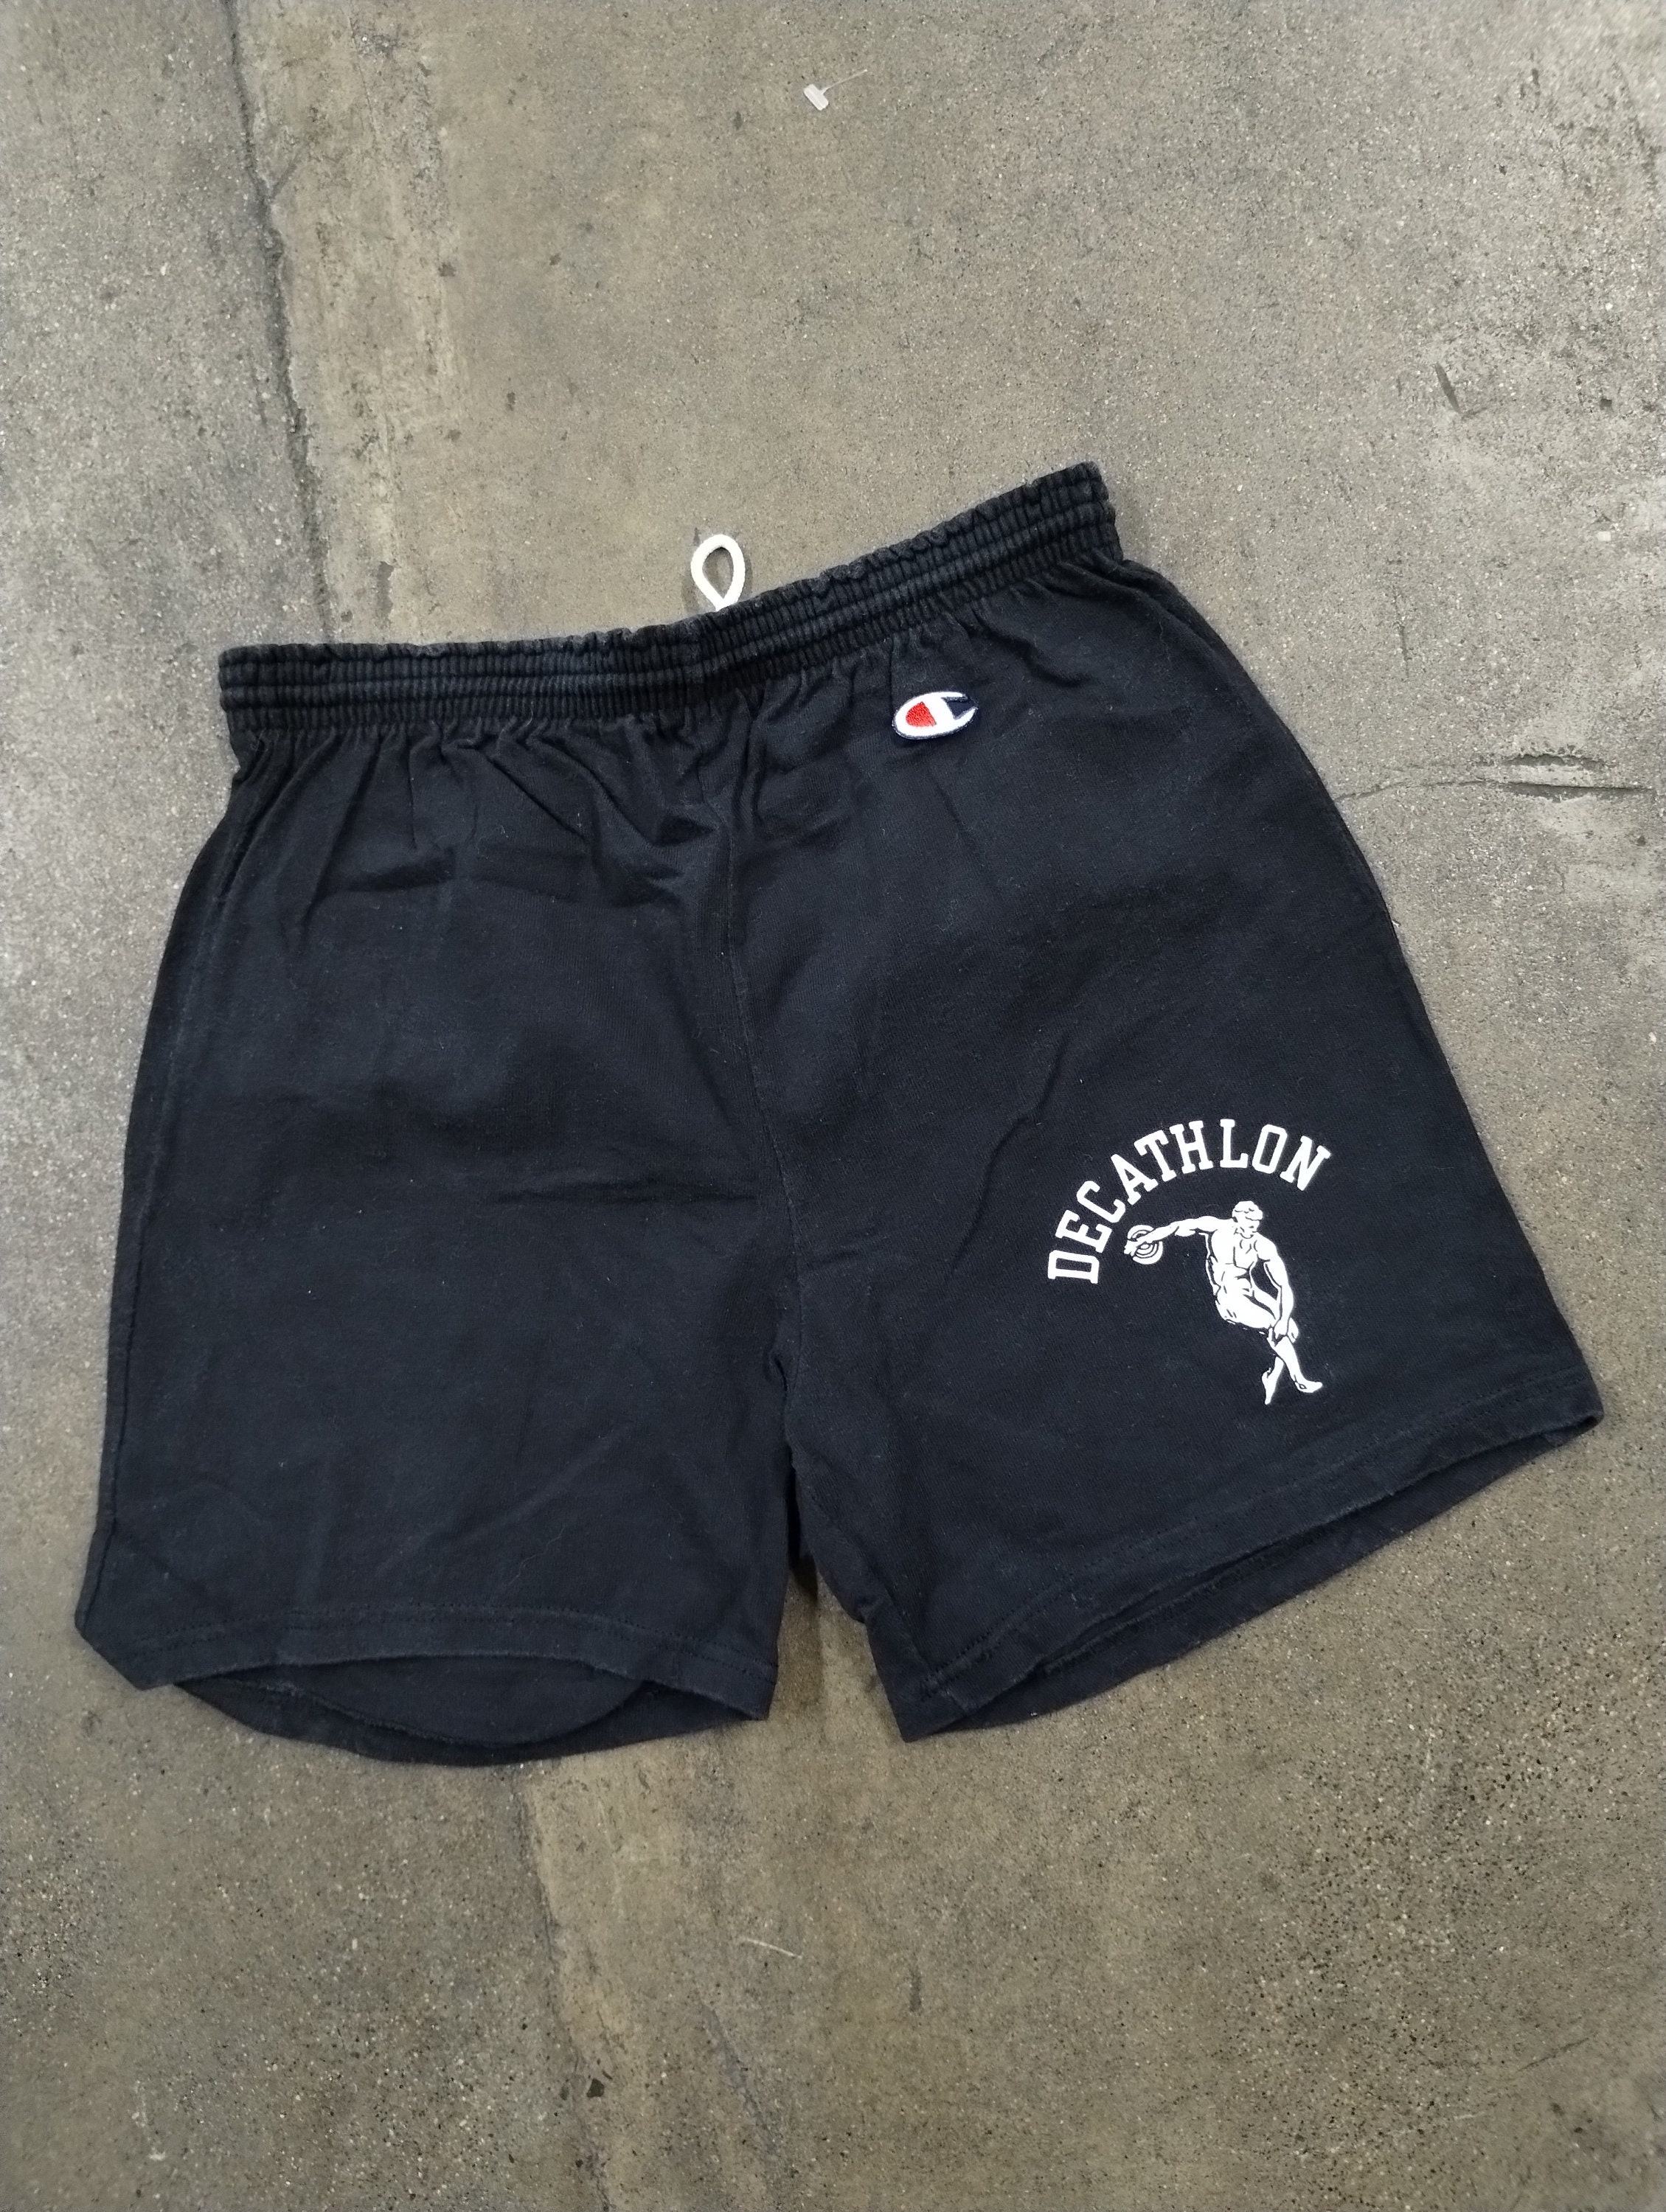 90s sailing shorts